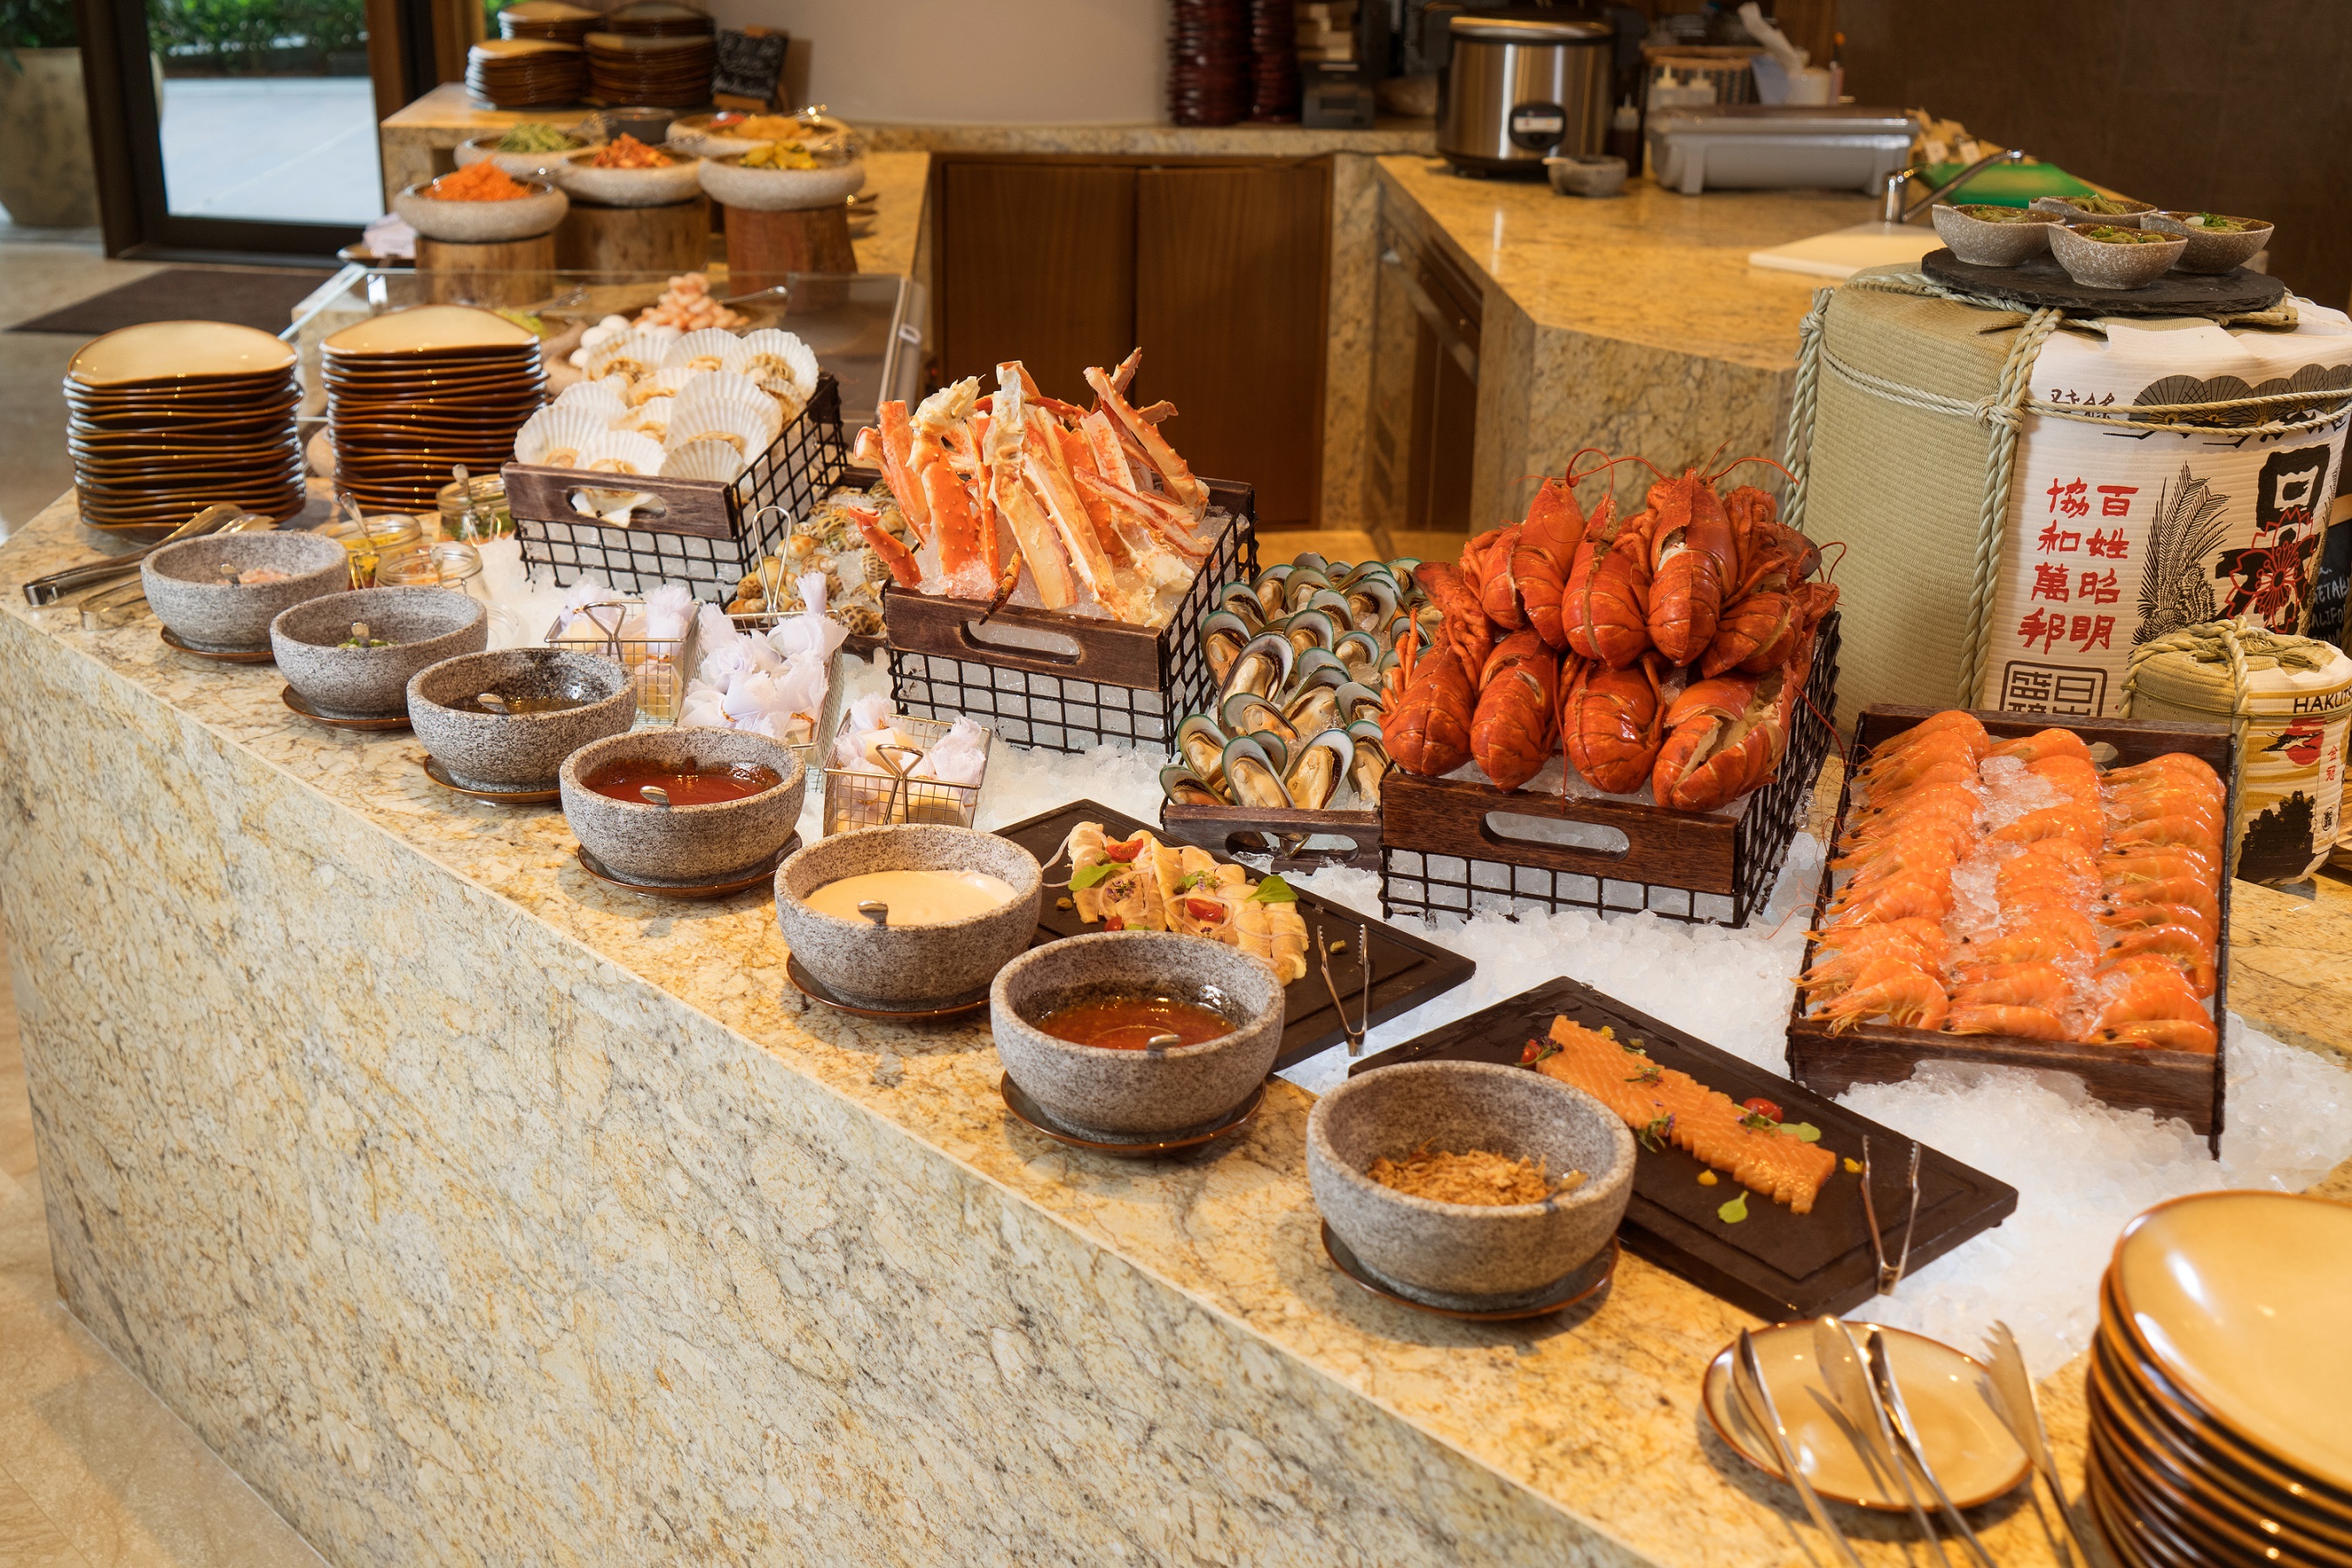 Kerry Hotel Hong Kong | Big Bay Cafe | Lunch Buffet, Brunch Buffet, Dinner Buffet